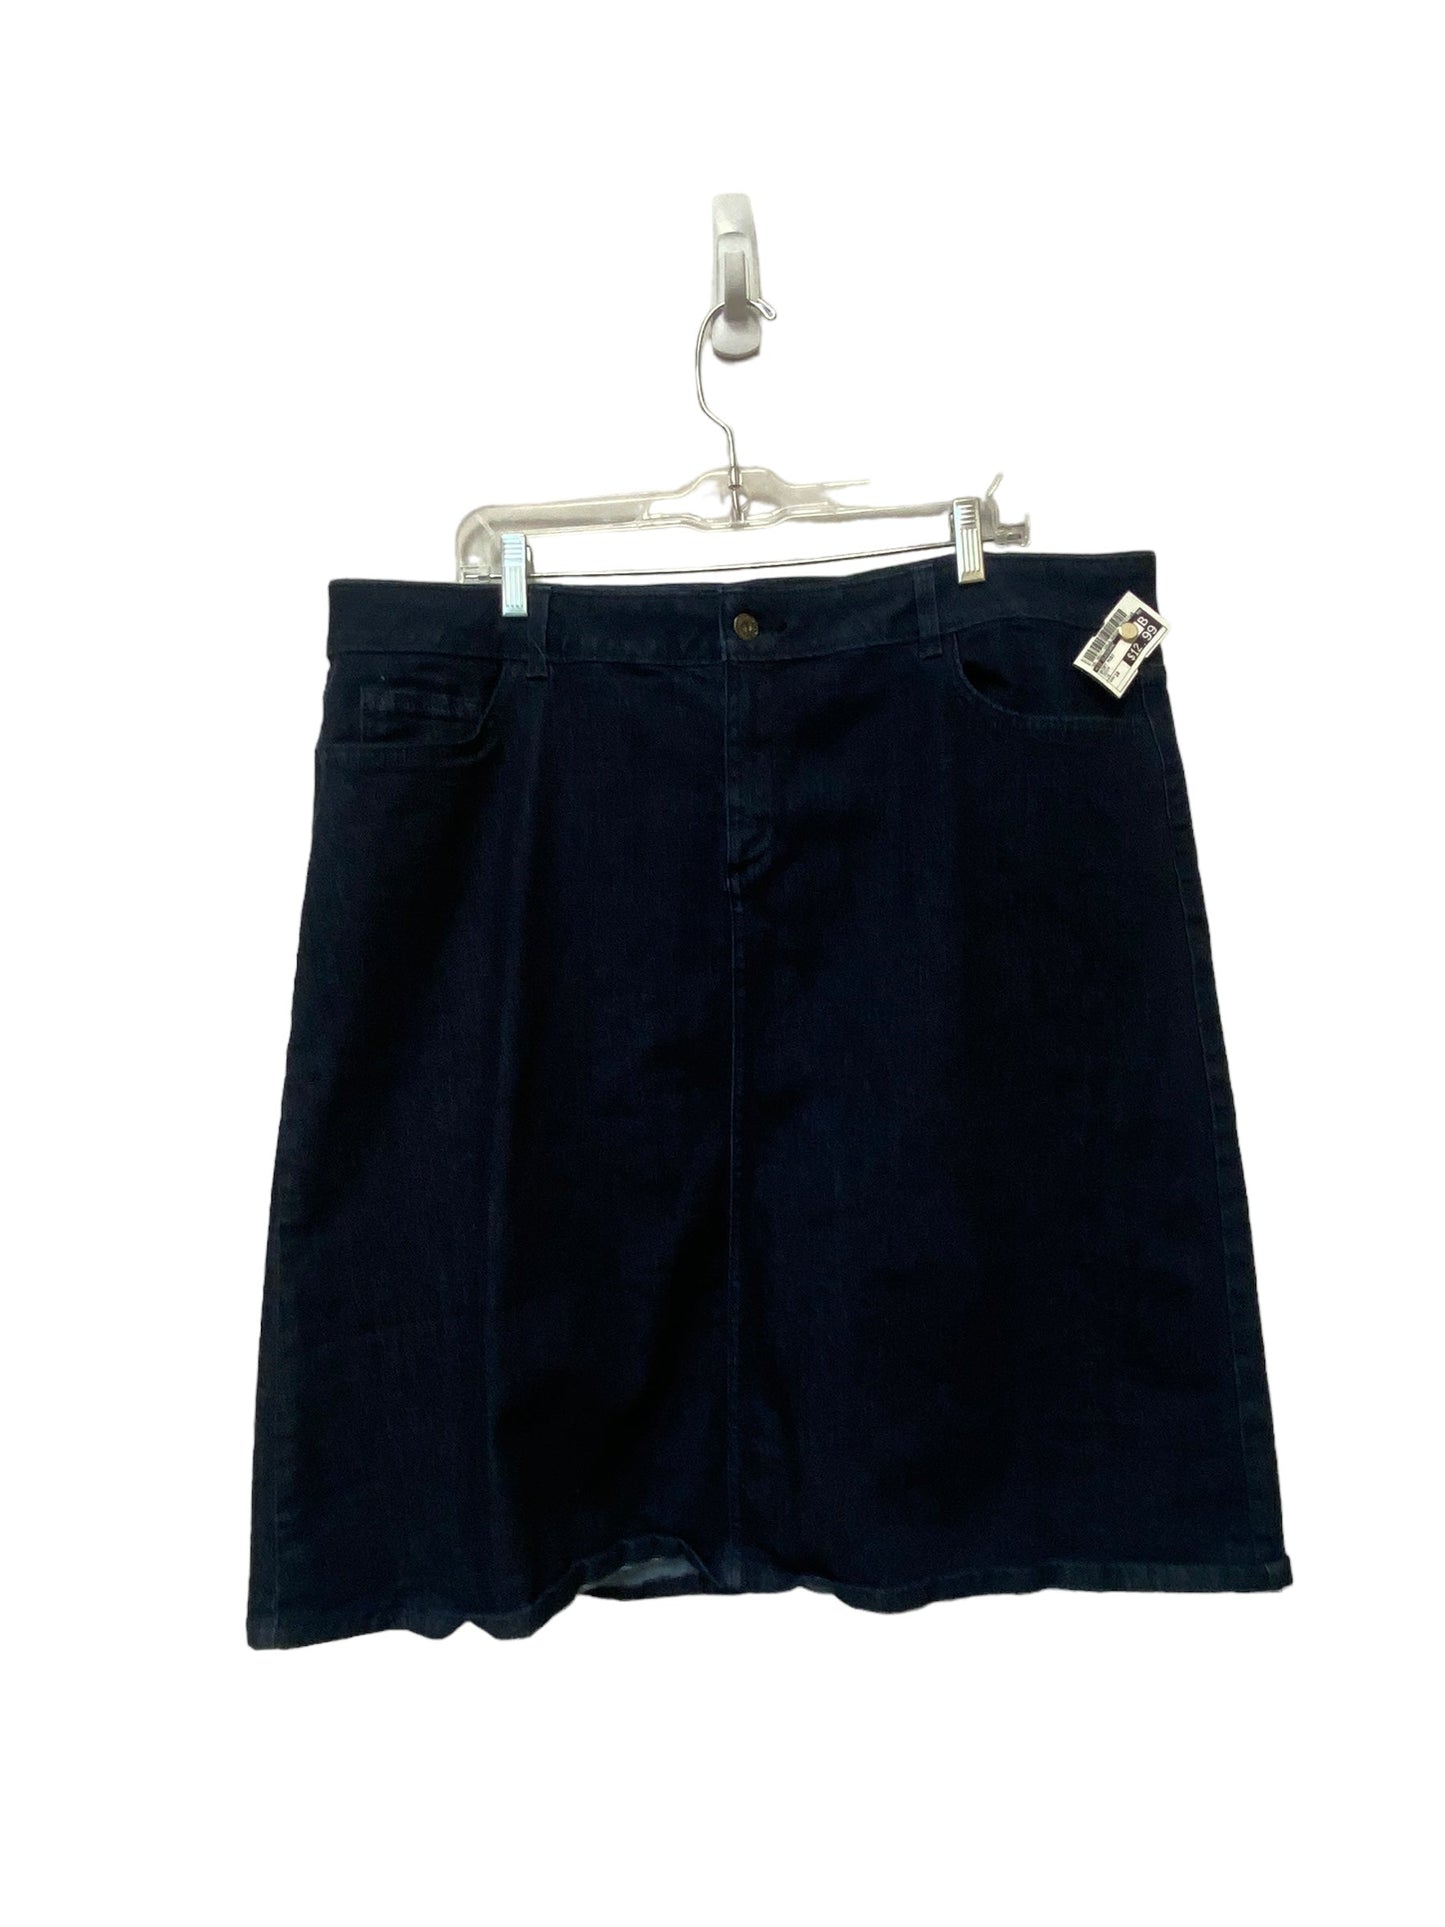 Skirt Midi By Liz Claiborne  Size: 18